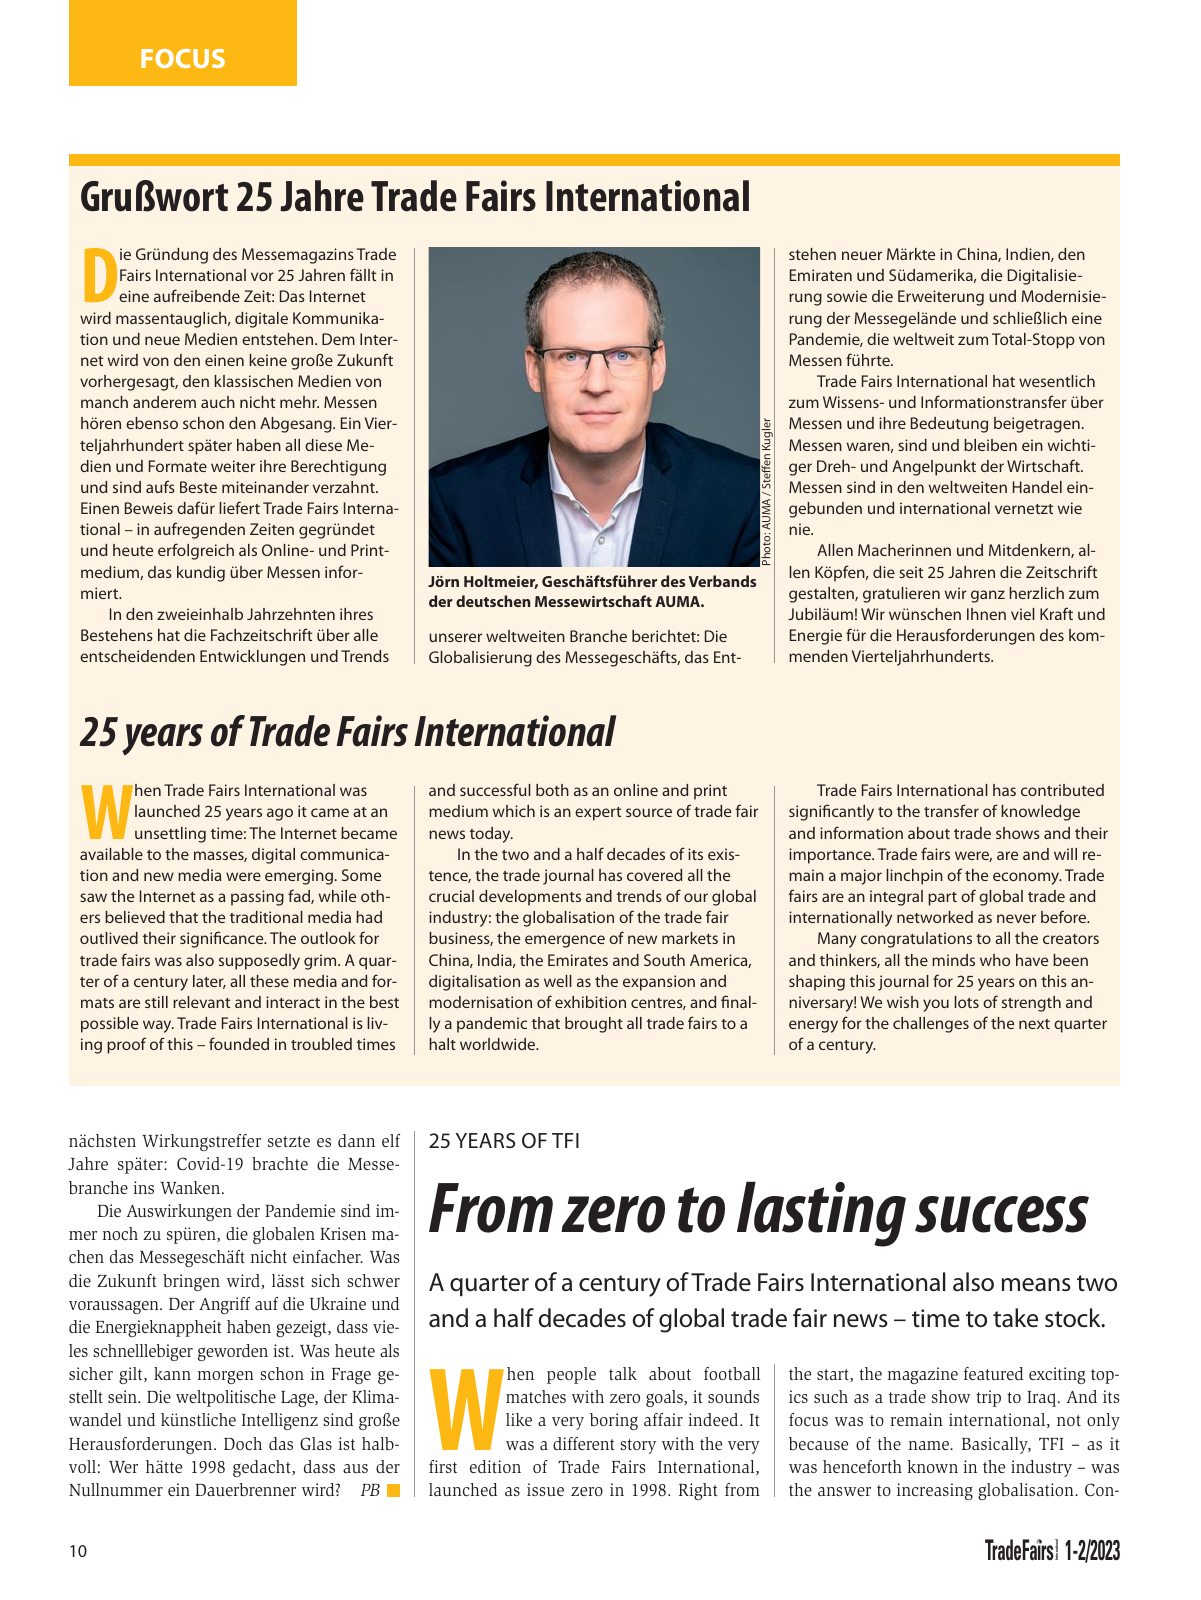 Vorschau TFI Trade-Fairs-International 01/2023 Seite 10